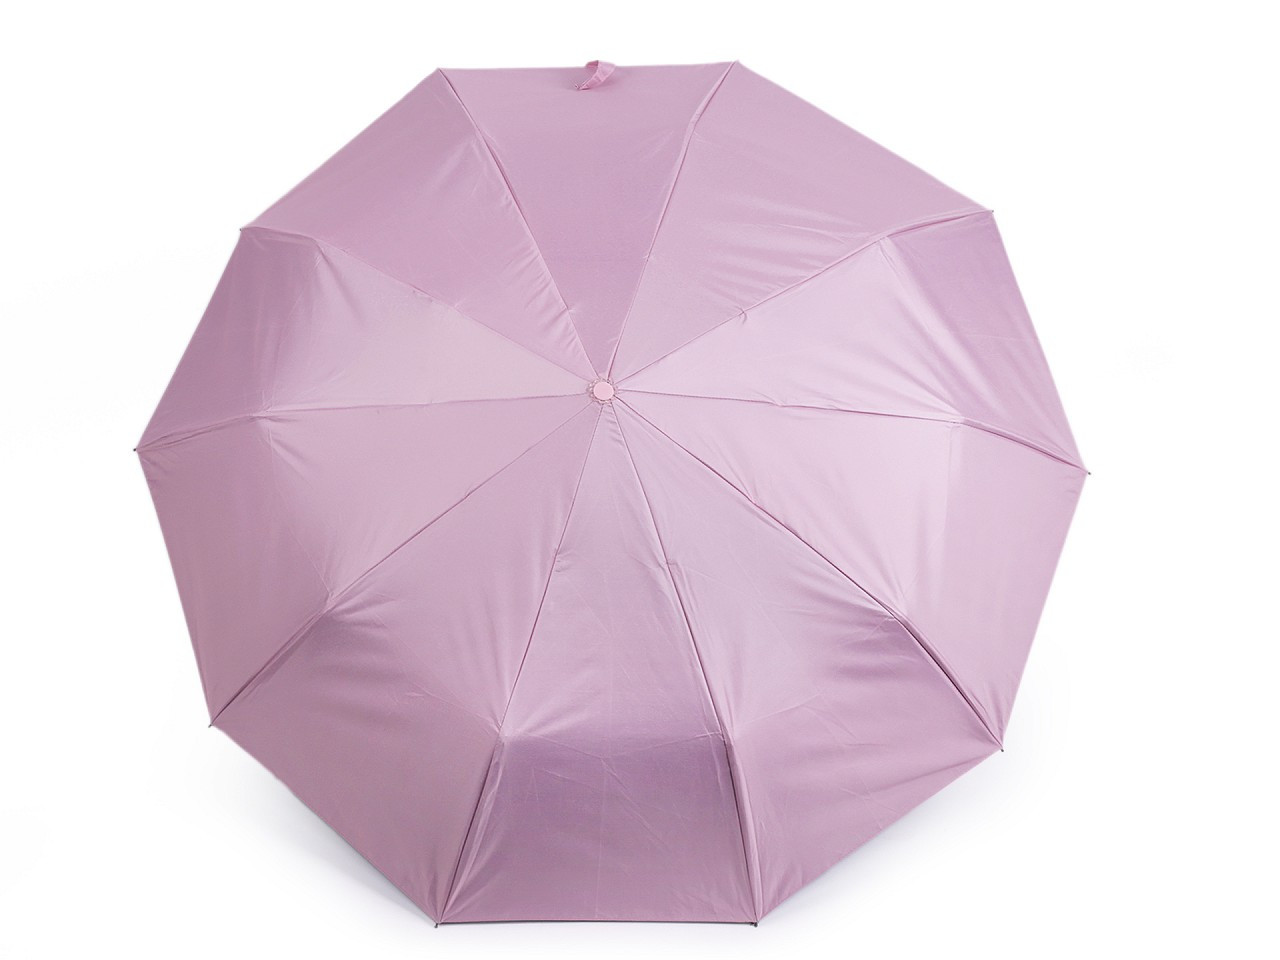 Skládací deštník s led světlem v rukojeti, barva 2 růžová sv.